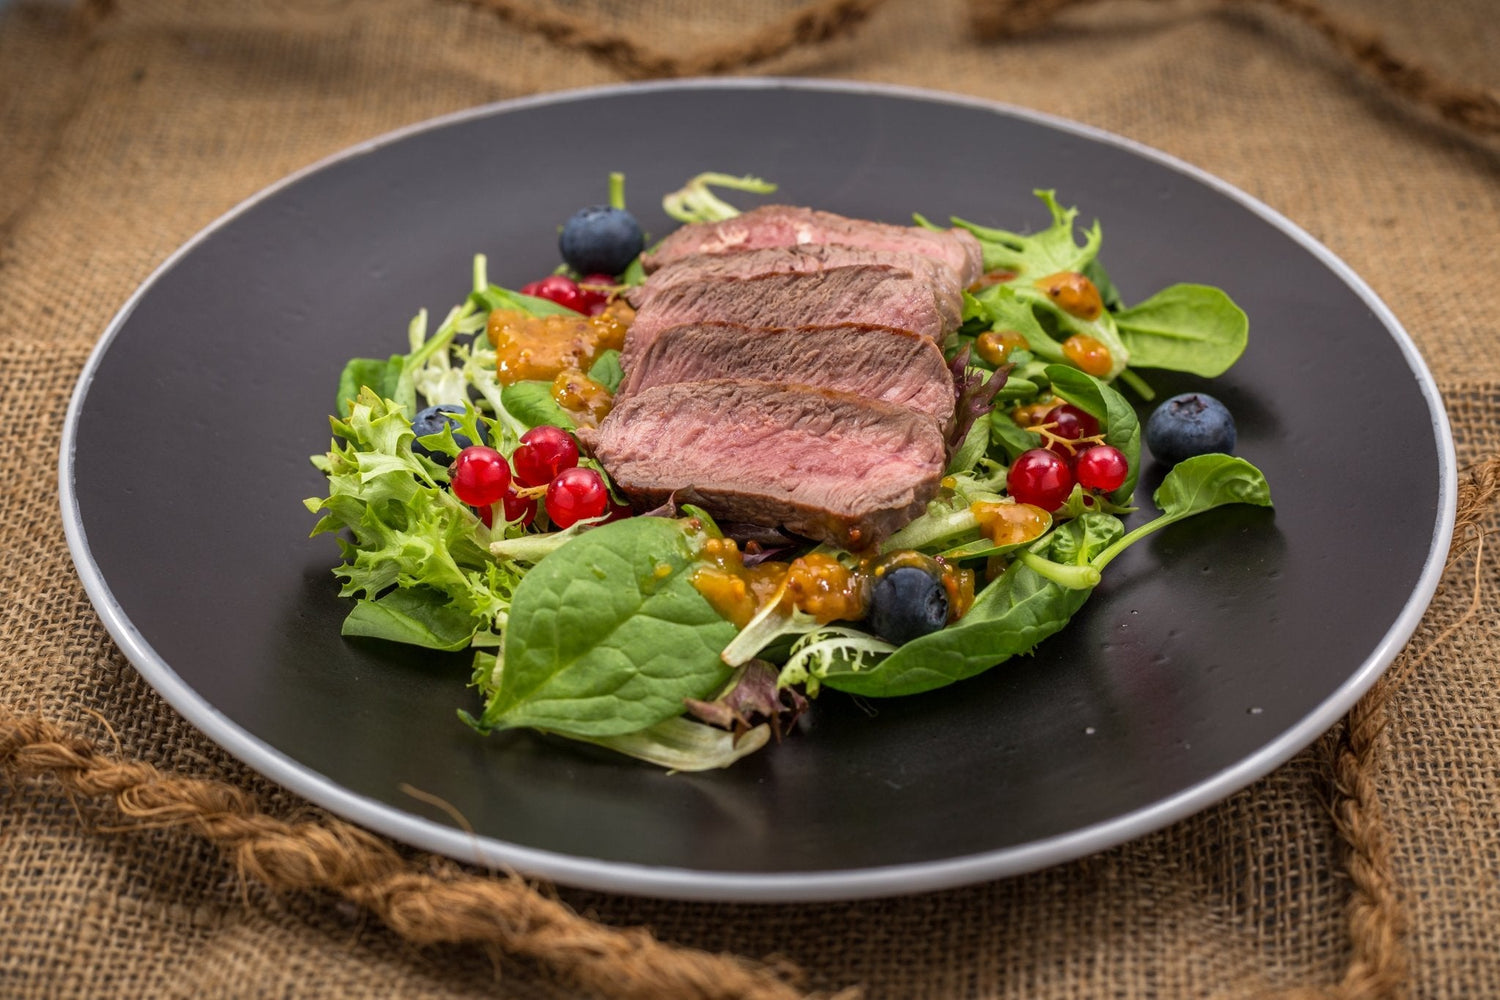 Büffel Hüftsteak auf wildem Pflücksalat Ein super leckerer Steak Salat – reich an Protein und Vitaminen und kaum Kohlehydraten. Das perfekte Gericht für ernährungsbewusste Genießer! ZUTATEN für 4 PERSONEN: 2 Büffel Hüftsteaks 1 Packung Wilder Pflücksalat